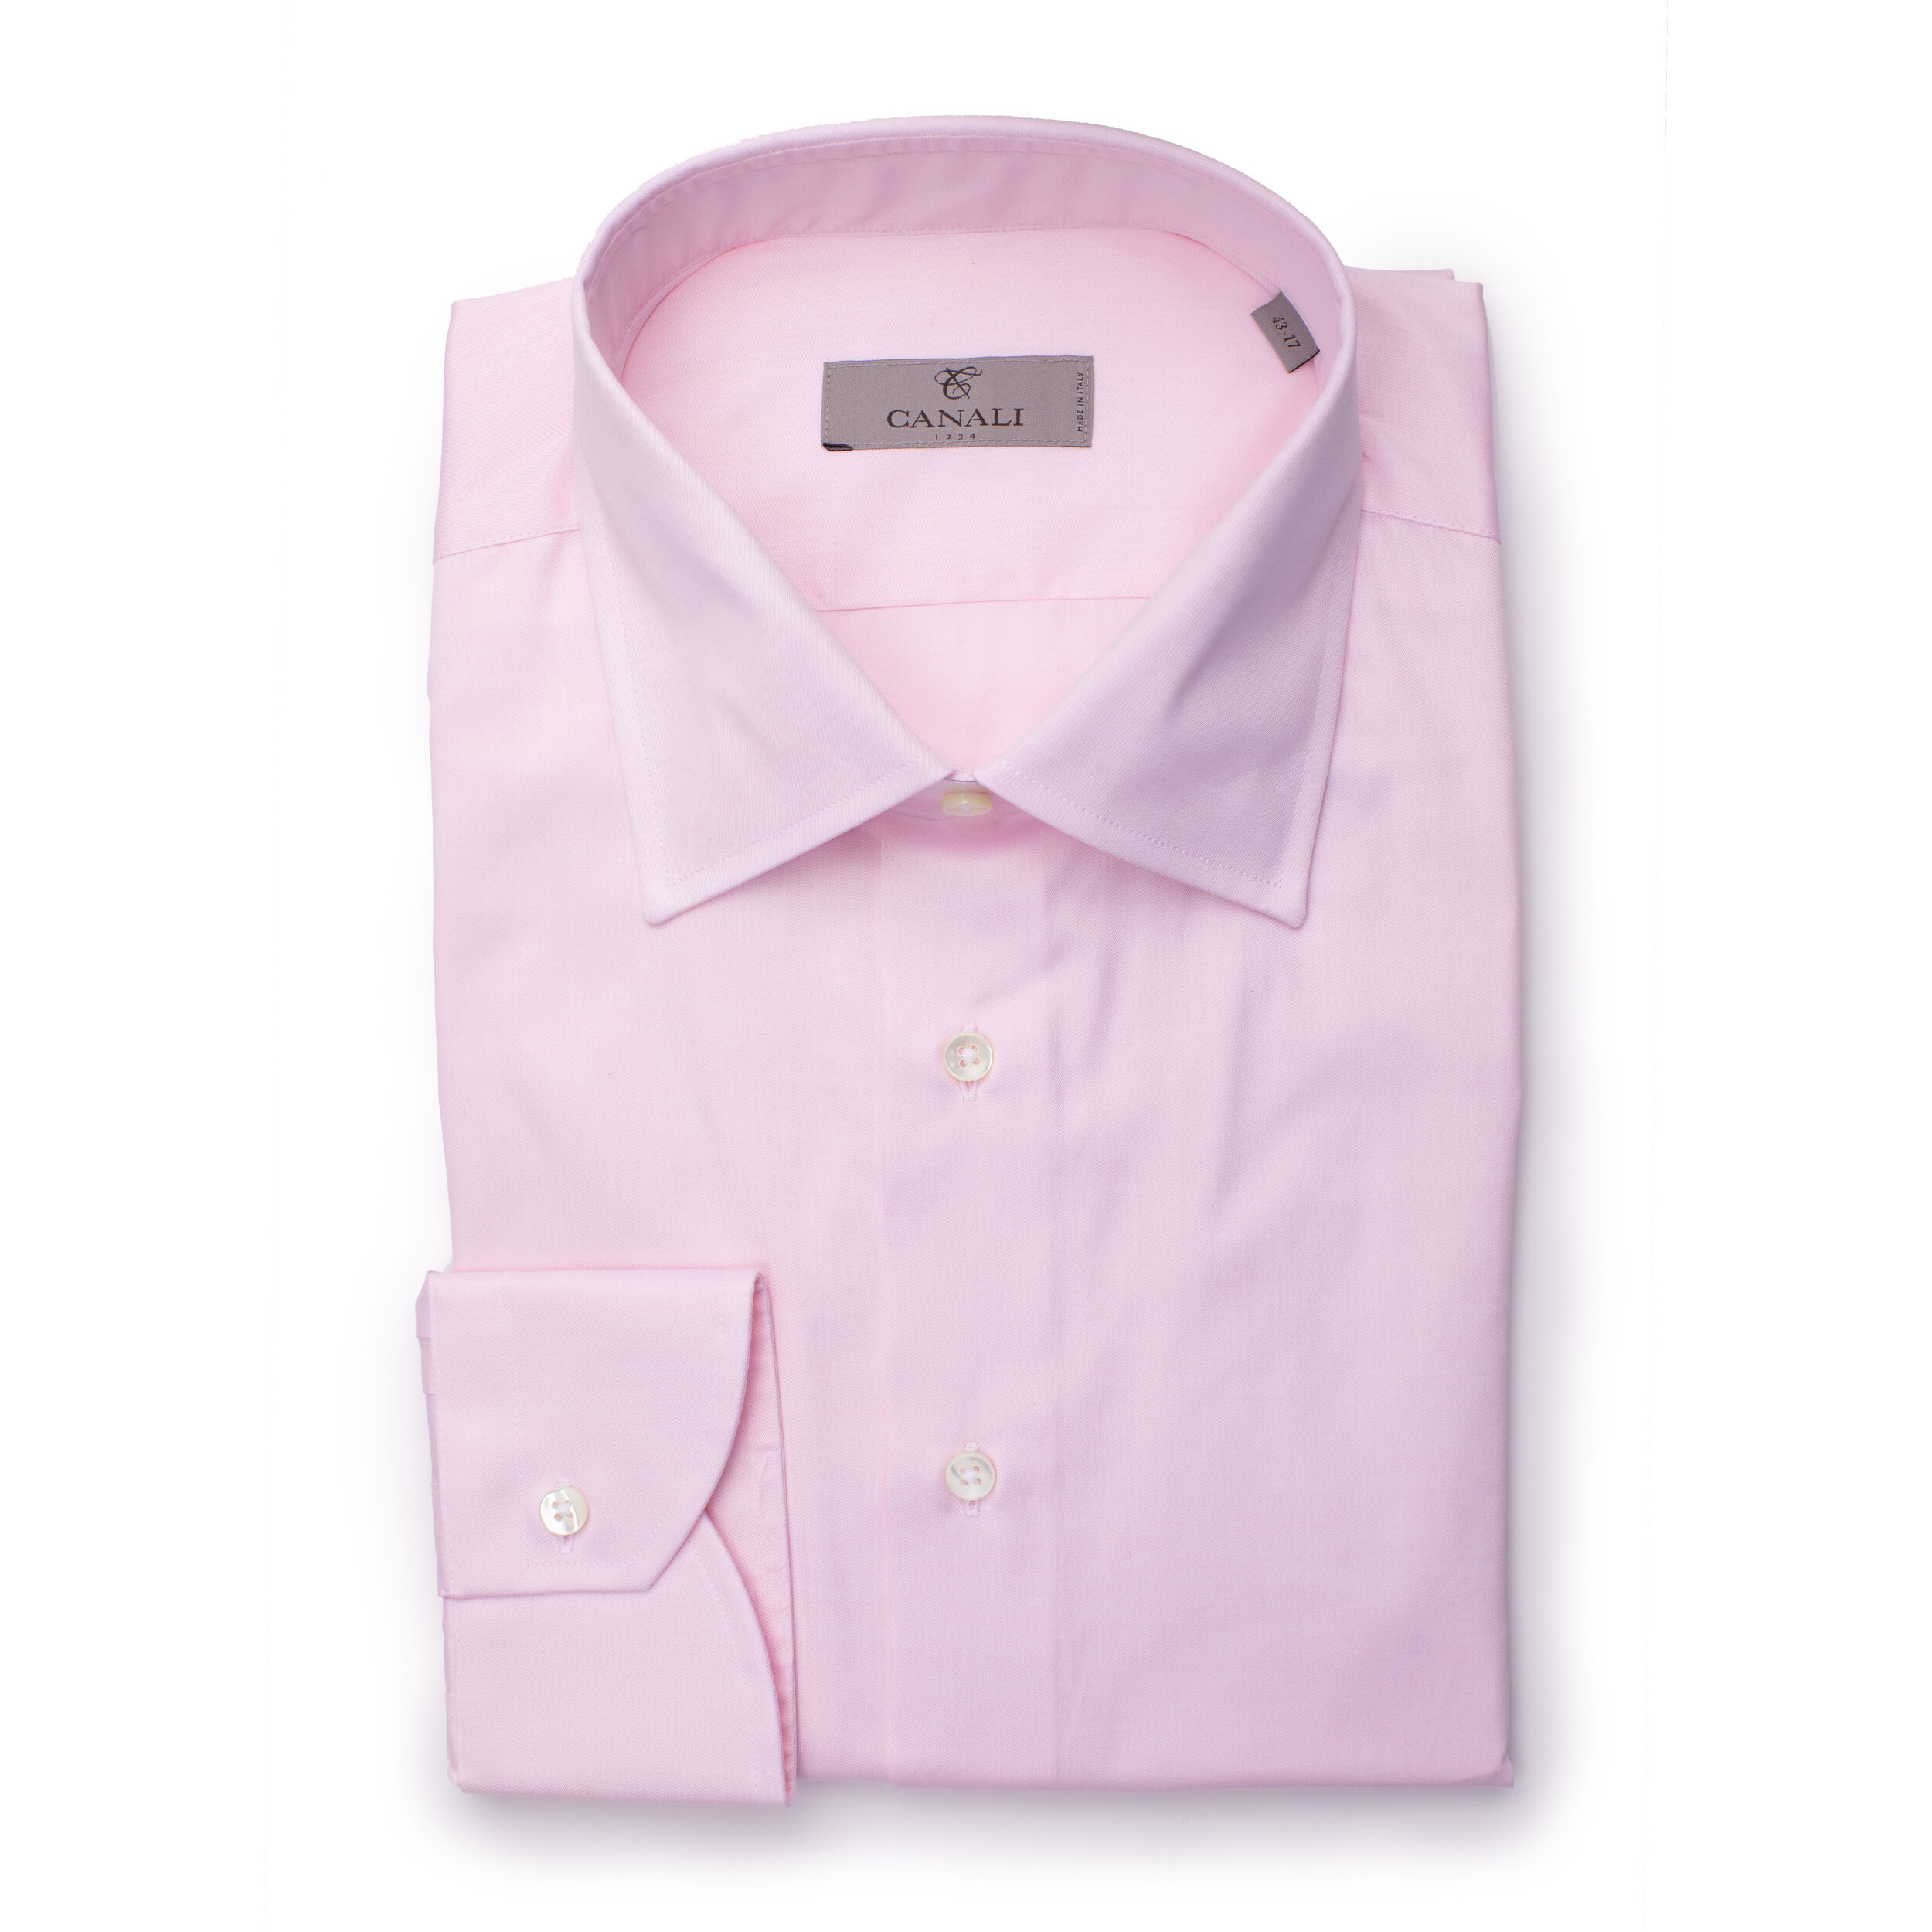 Canali Pink Check Formal Shirts 